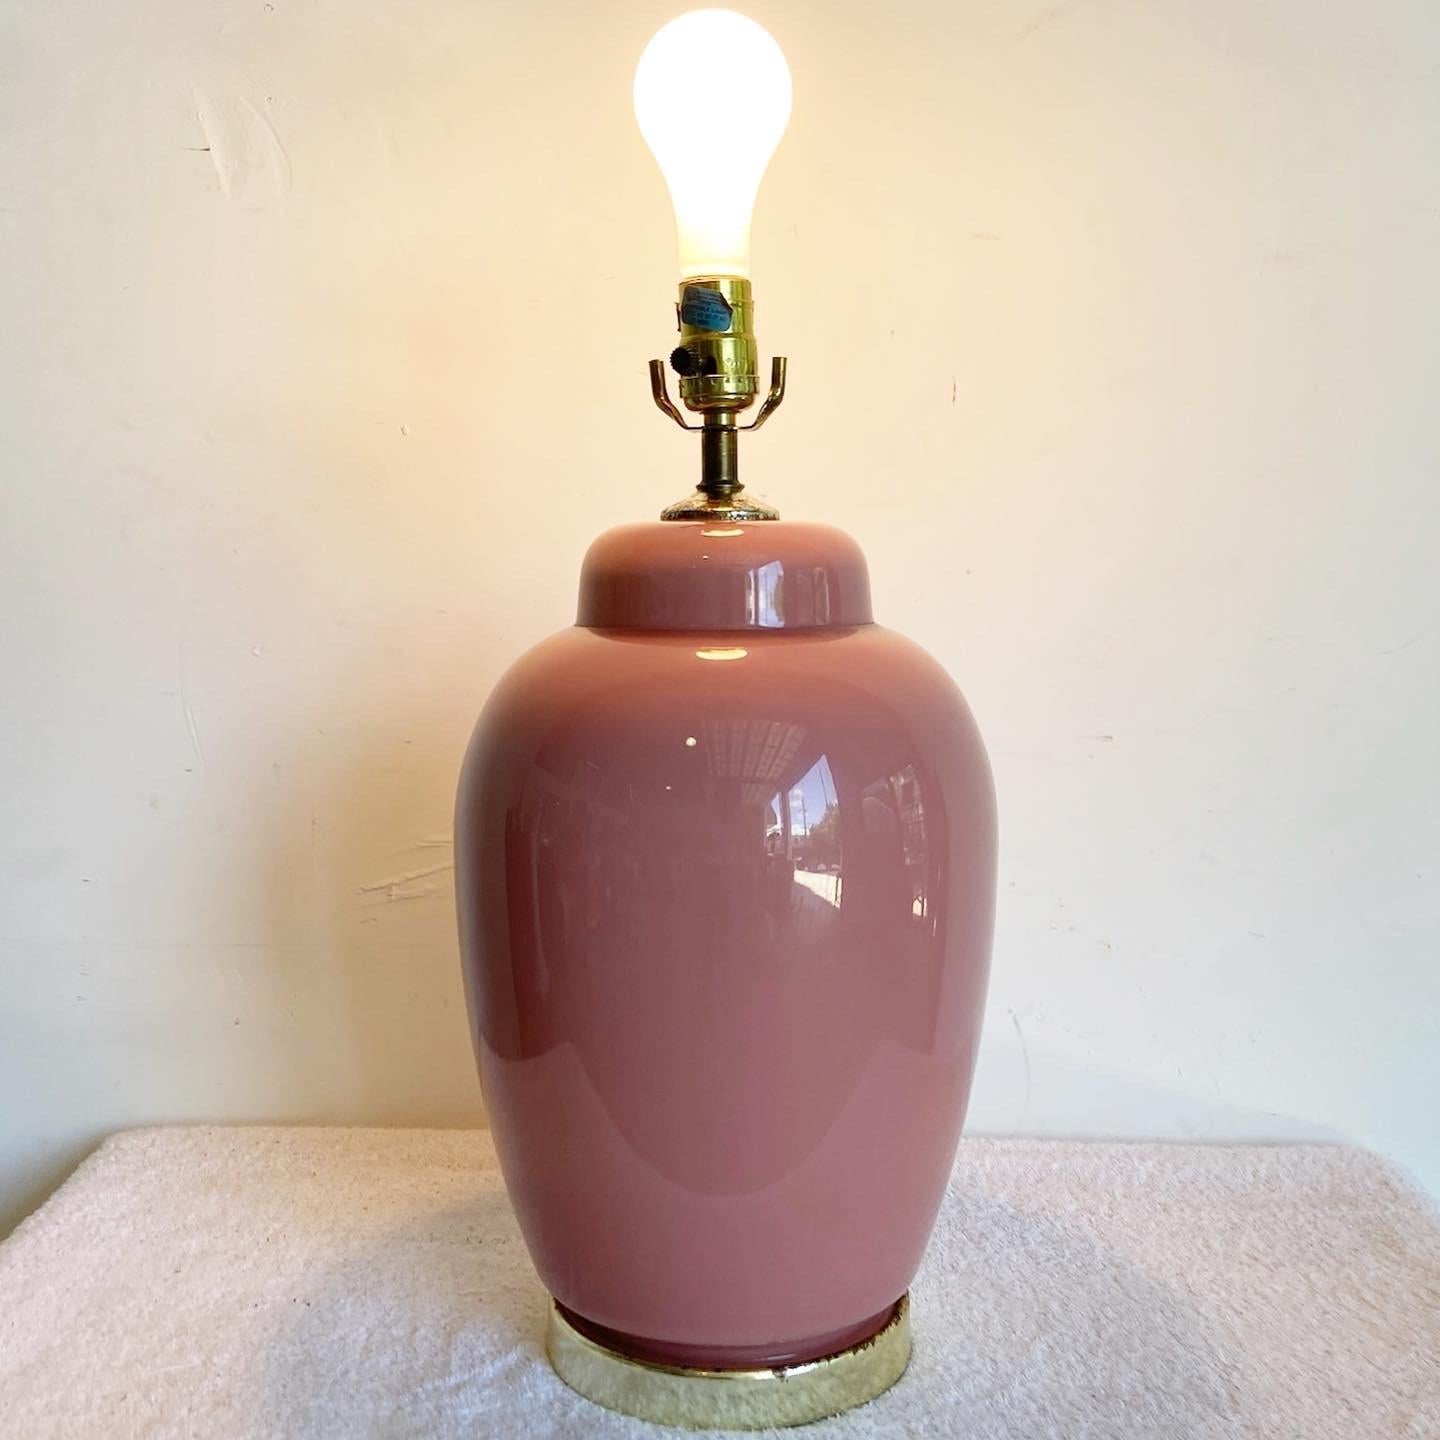 Wir präsentieren unsere postmoderne Tischleuchte aus rosafarbener, glänzender Keramik, eine Mischung aus zeitgenössischem Design und eleganter Ästhetik. Mit ihrem eleganten Keramiksockel in leuchtendem Pink verleiht diese kompakte Lampe jedem Raum